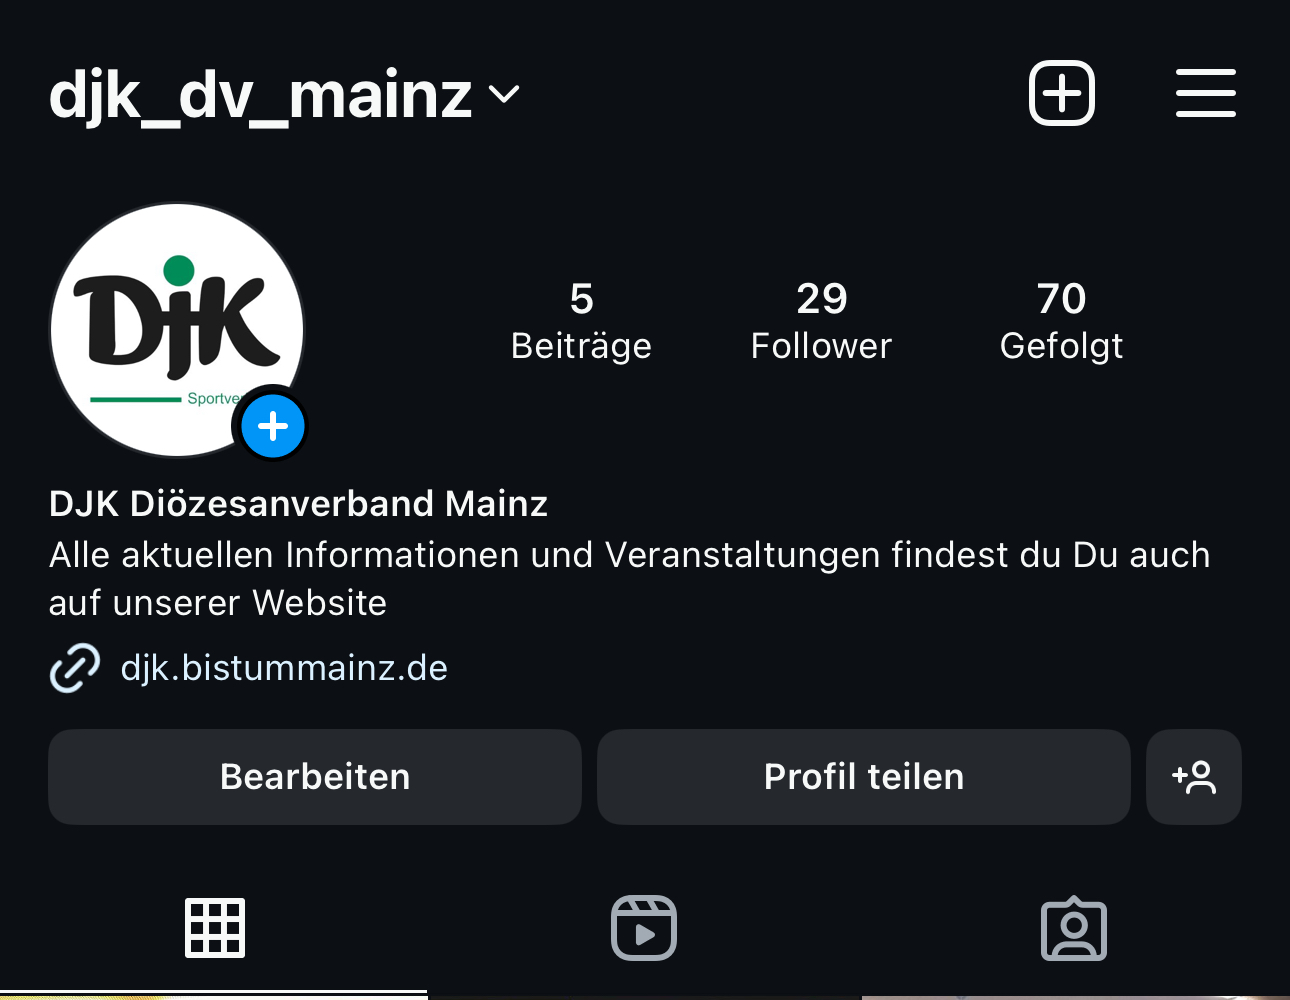 DJK DV Mainz Instagram (c) DJK DV Mainz